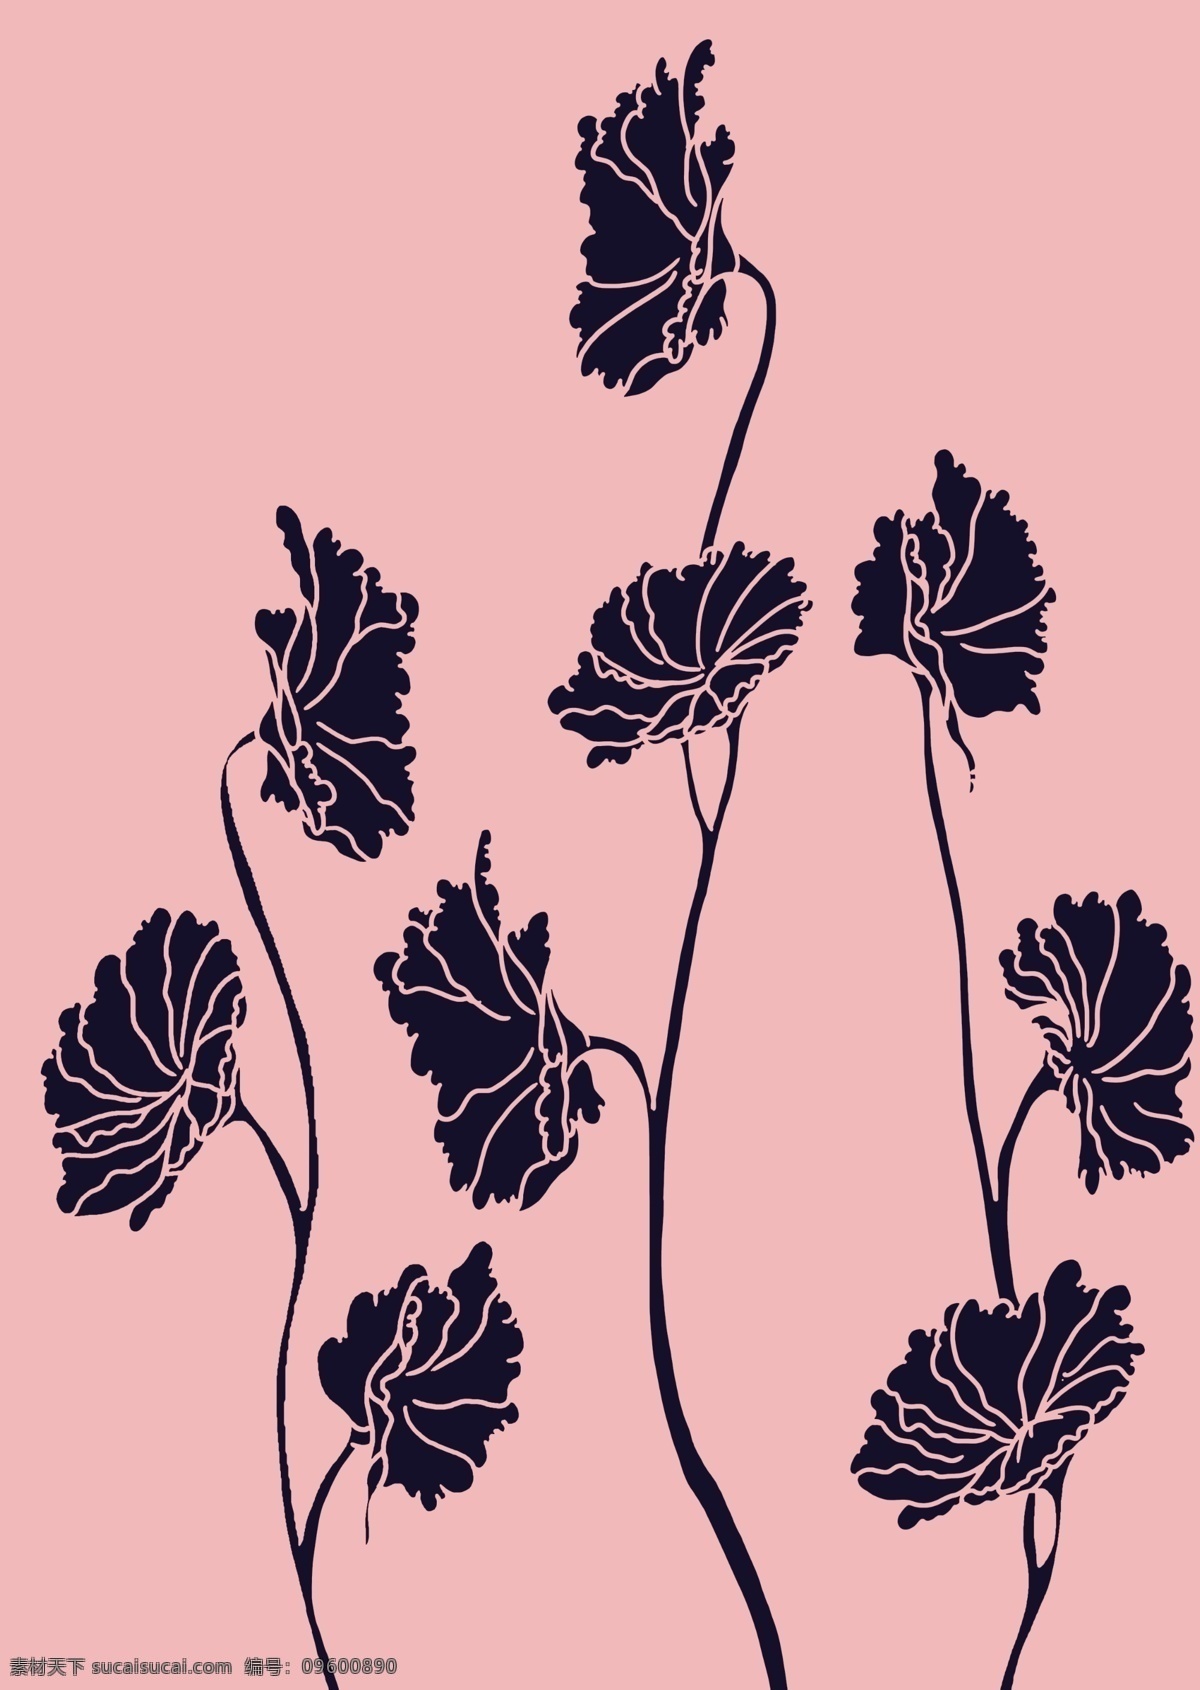 粉红 底 蓝色 花边 图案 两色 二色 黑白 简单 色块 花纹 纯色 手绘 绘画图 彩绘 雕花 包装 印花 单色